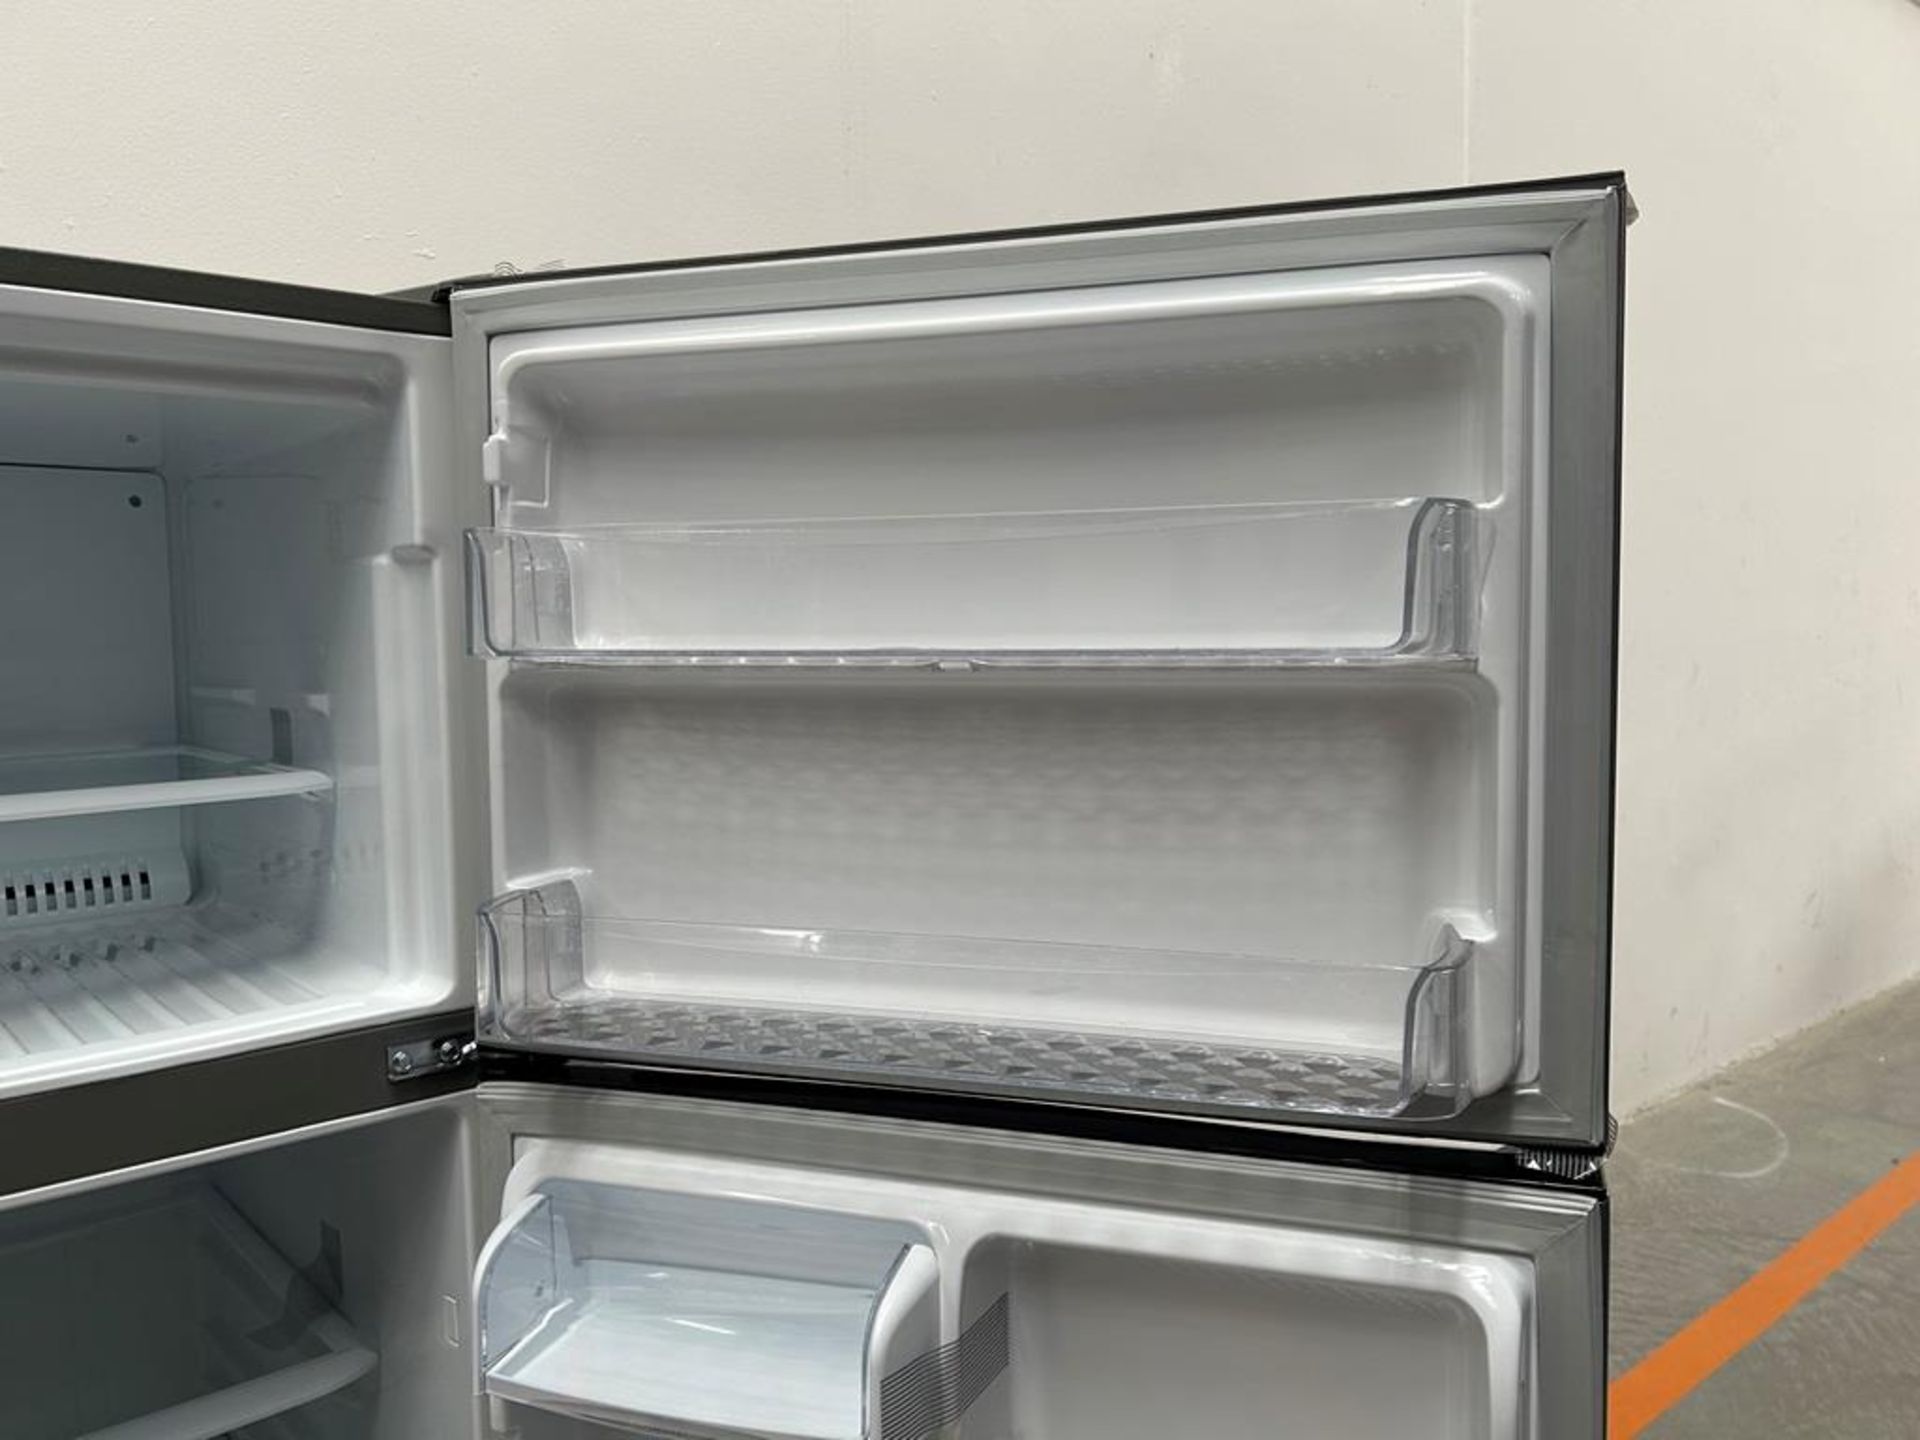 (NUEVO) Refrigerador Marca LG, Modelo LT57BPSX, Serie P2D419, Color GRIS - Image 8 of 11